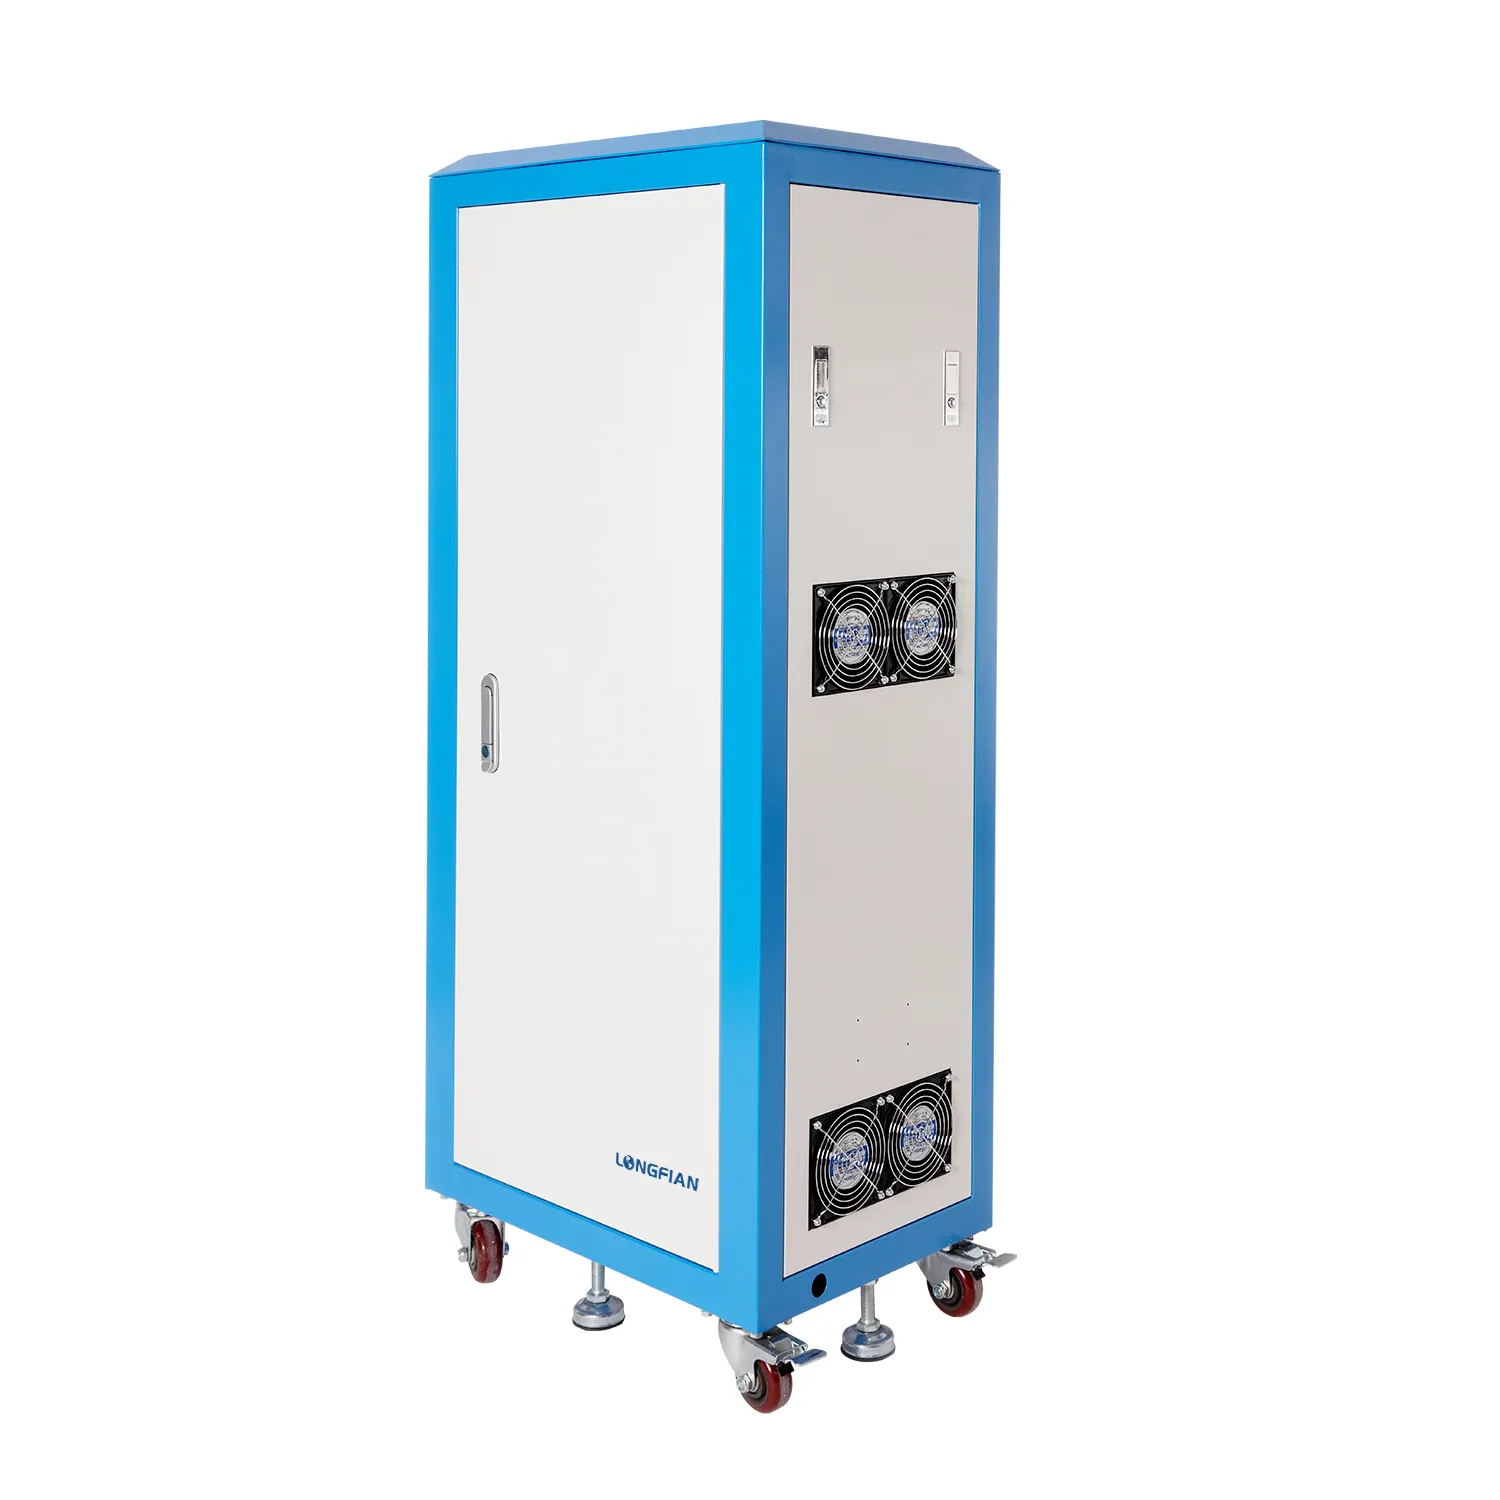 Concentratore di ossigeno industriale di alta qualità Longfian per saldatura e taglio